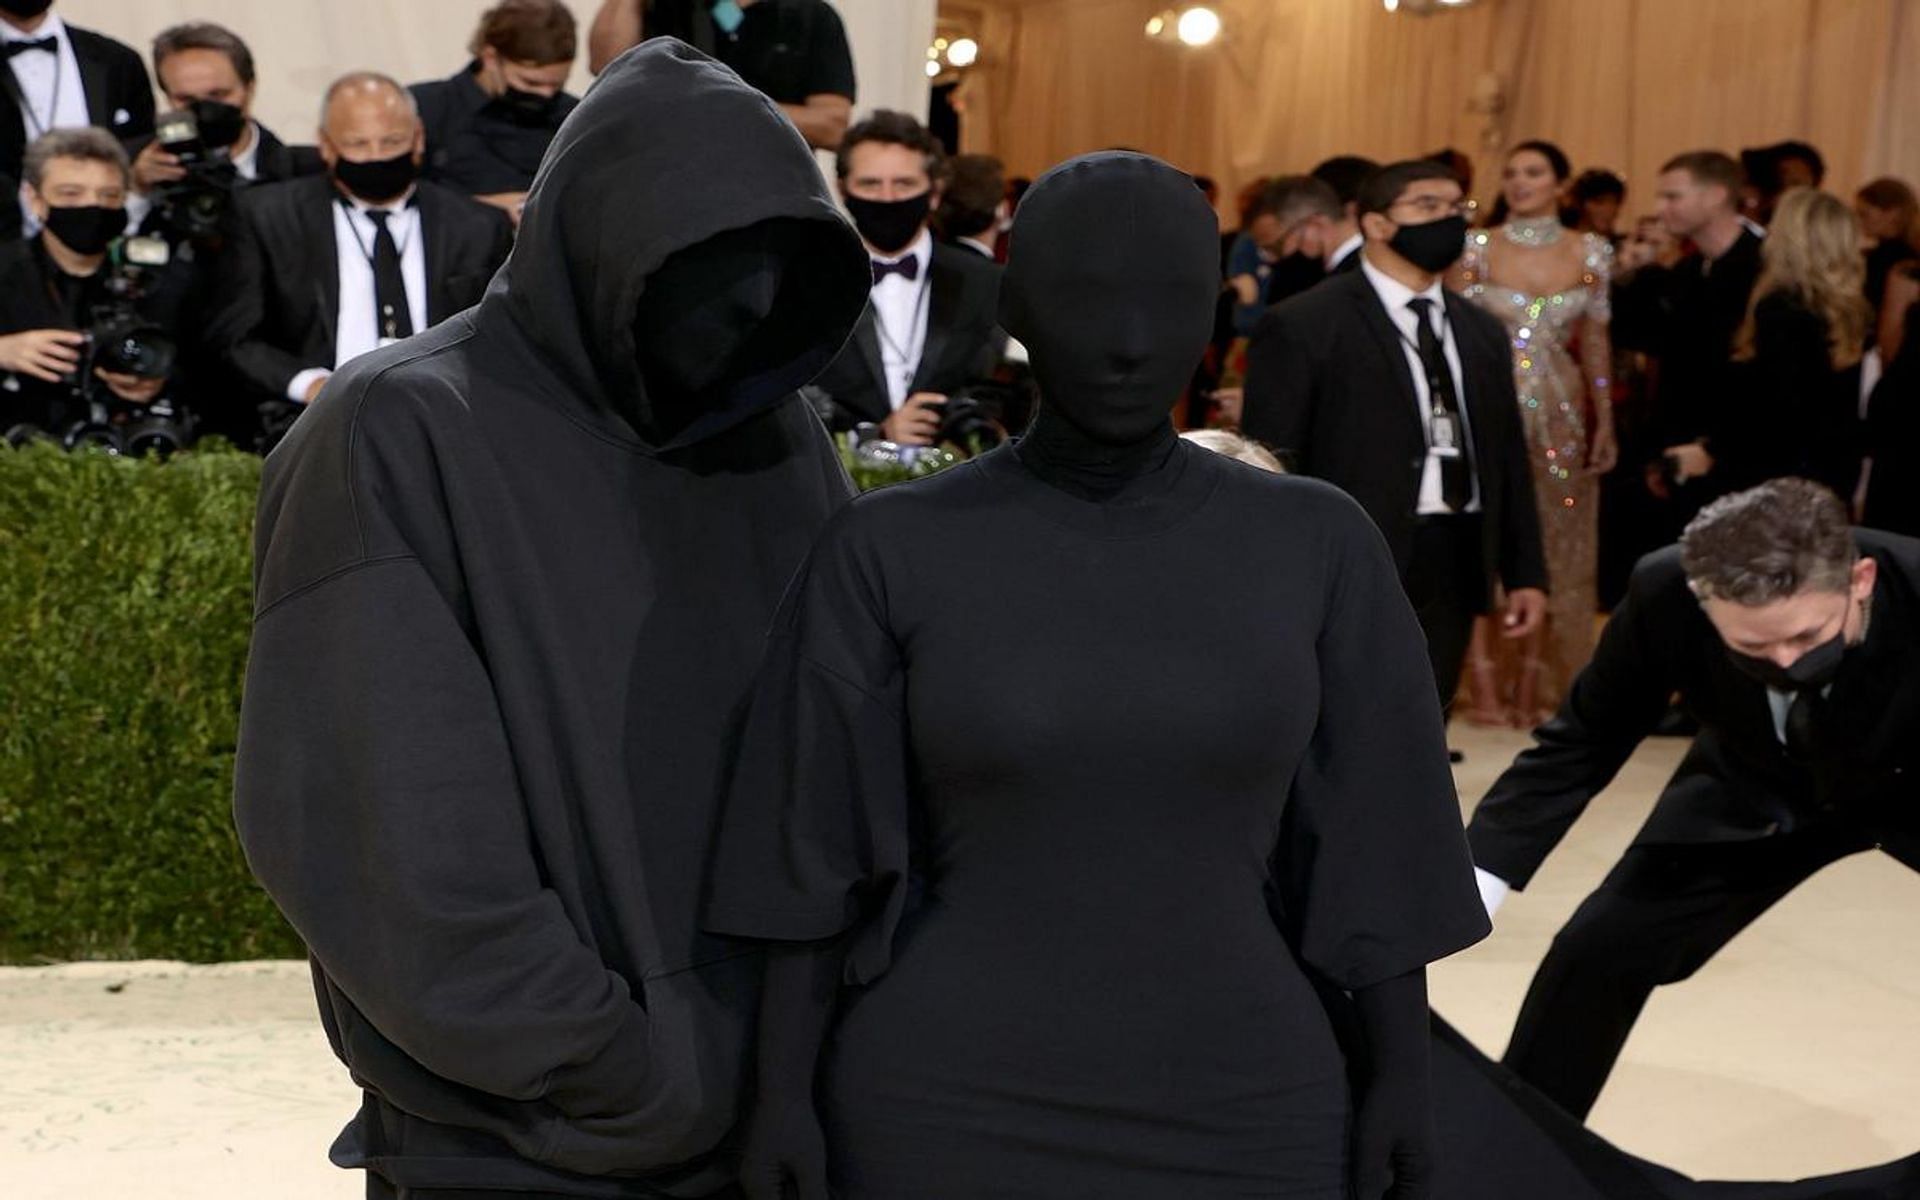 Kim Kardashian at the 2021 MET Gala (Image via VOGUE)